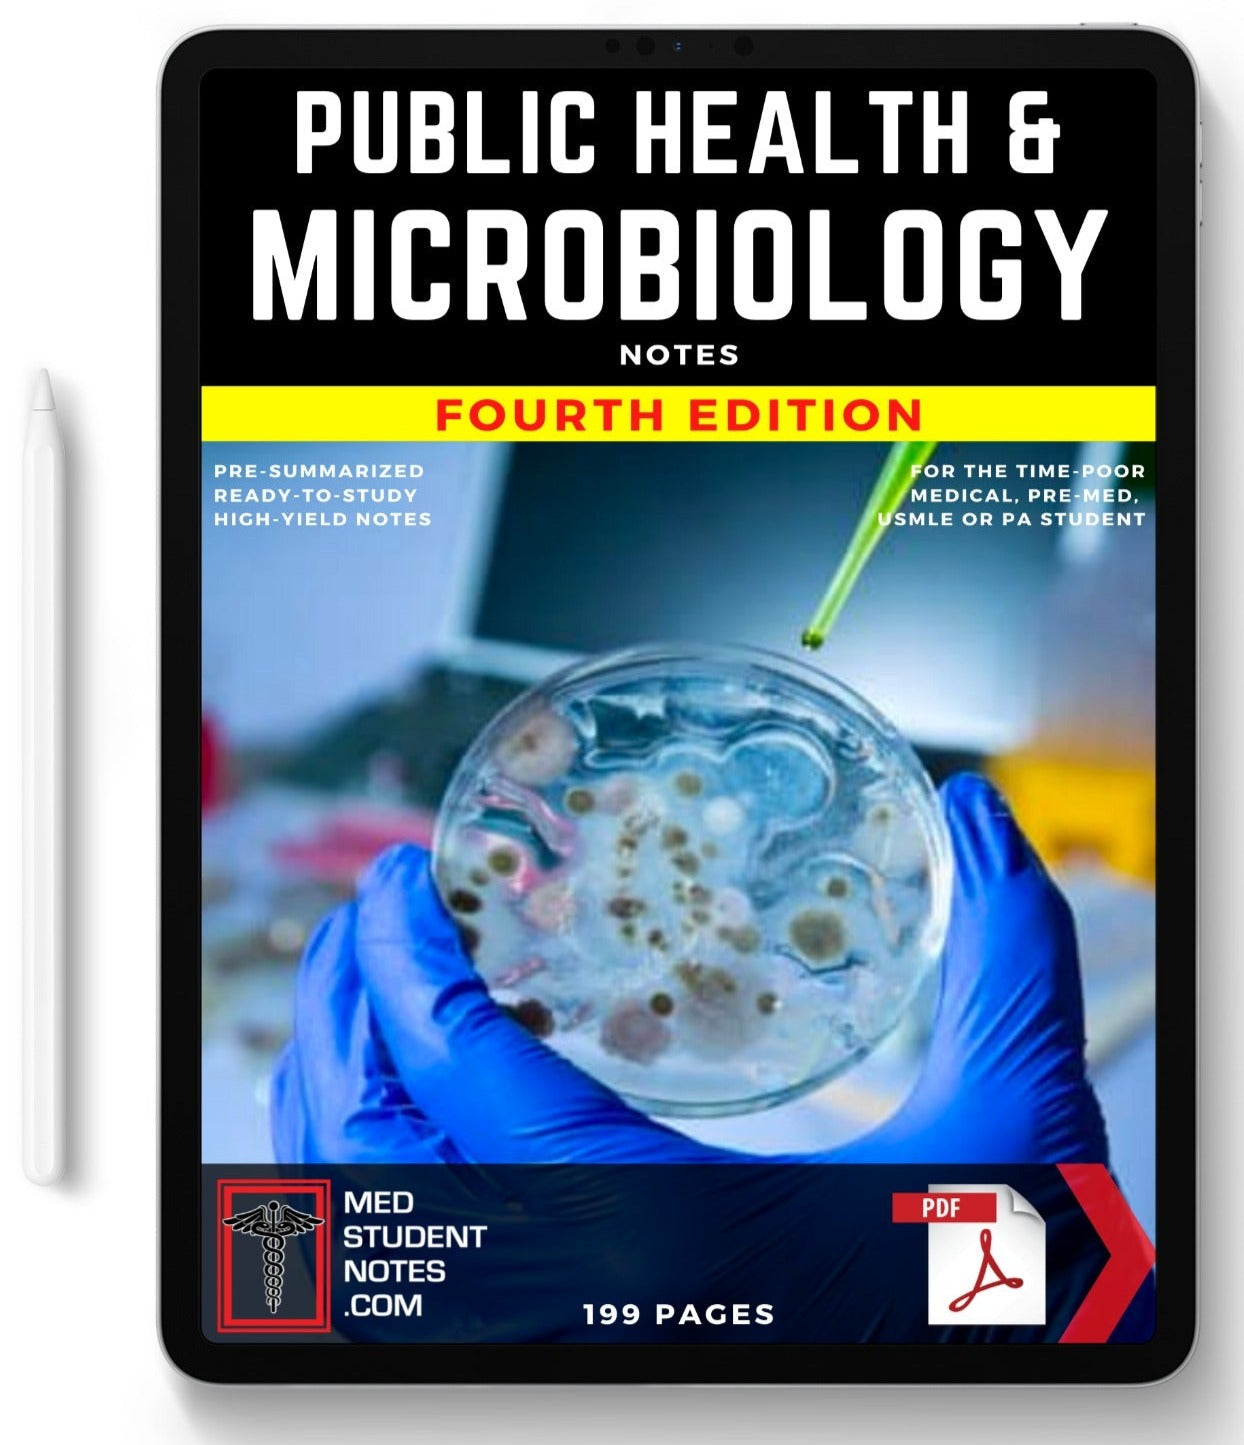 Public Health & Microbiology MedStudentNotes